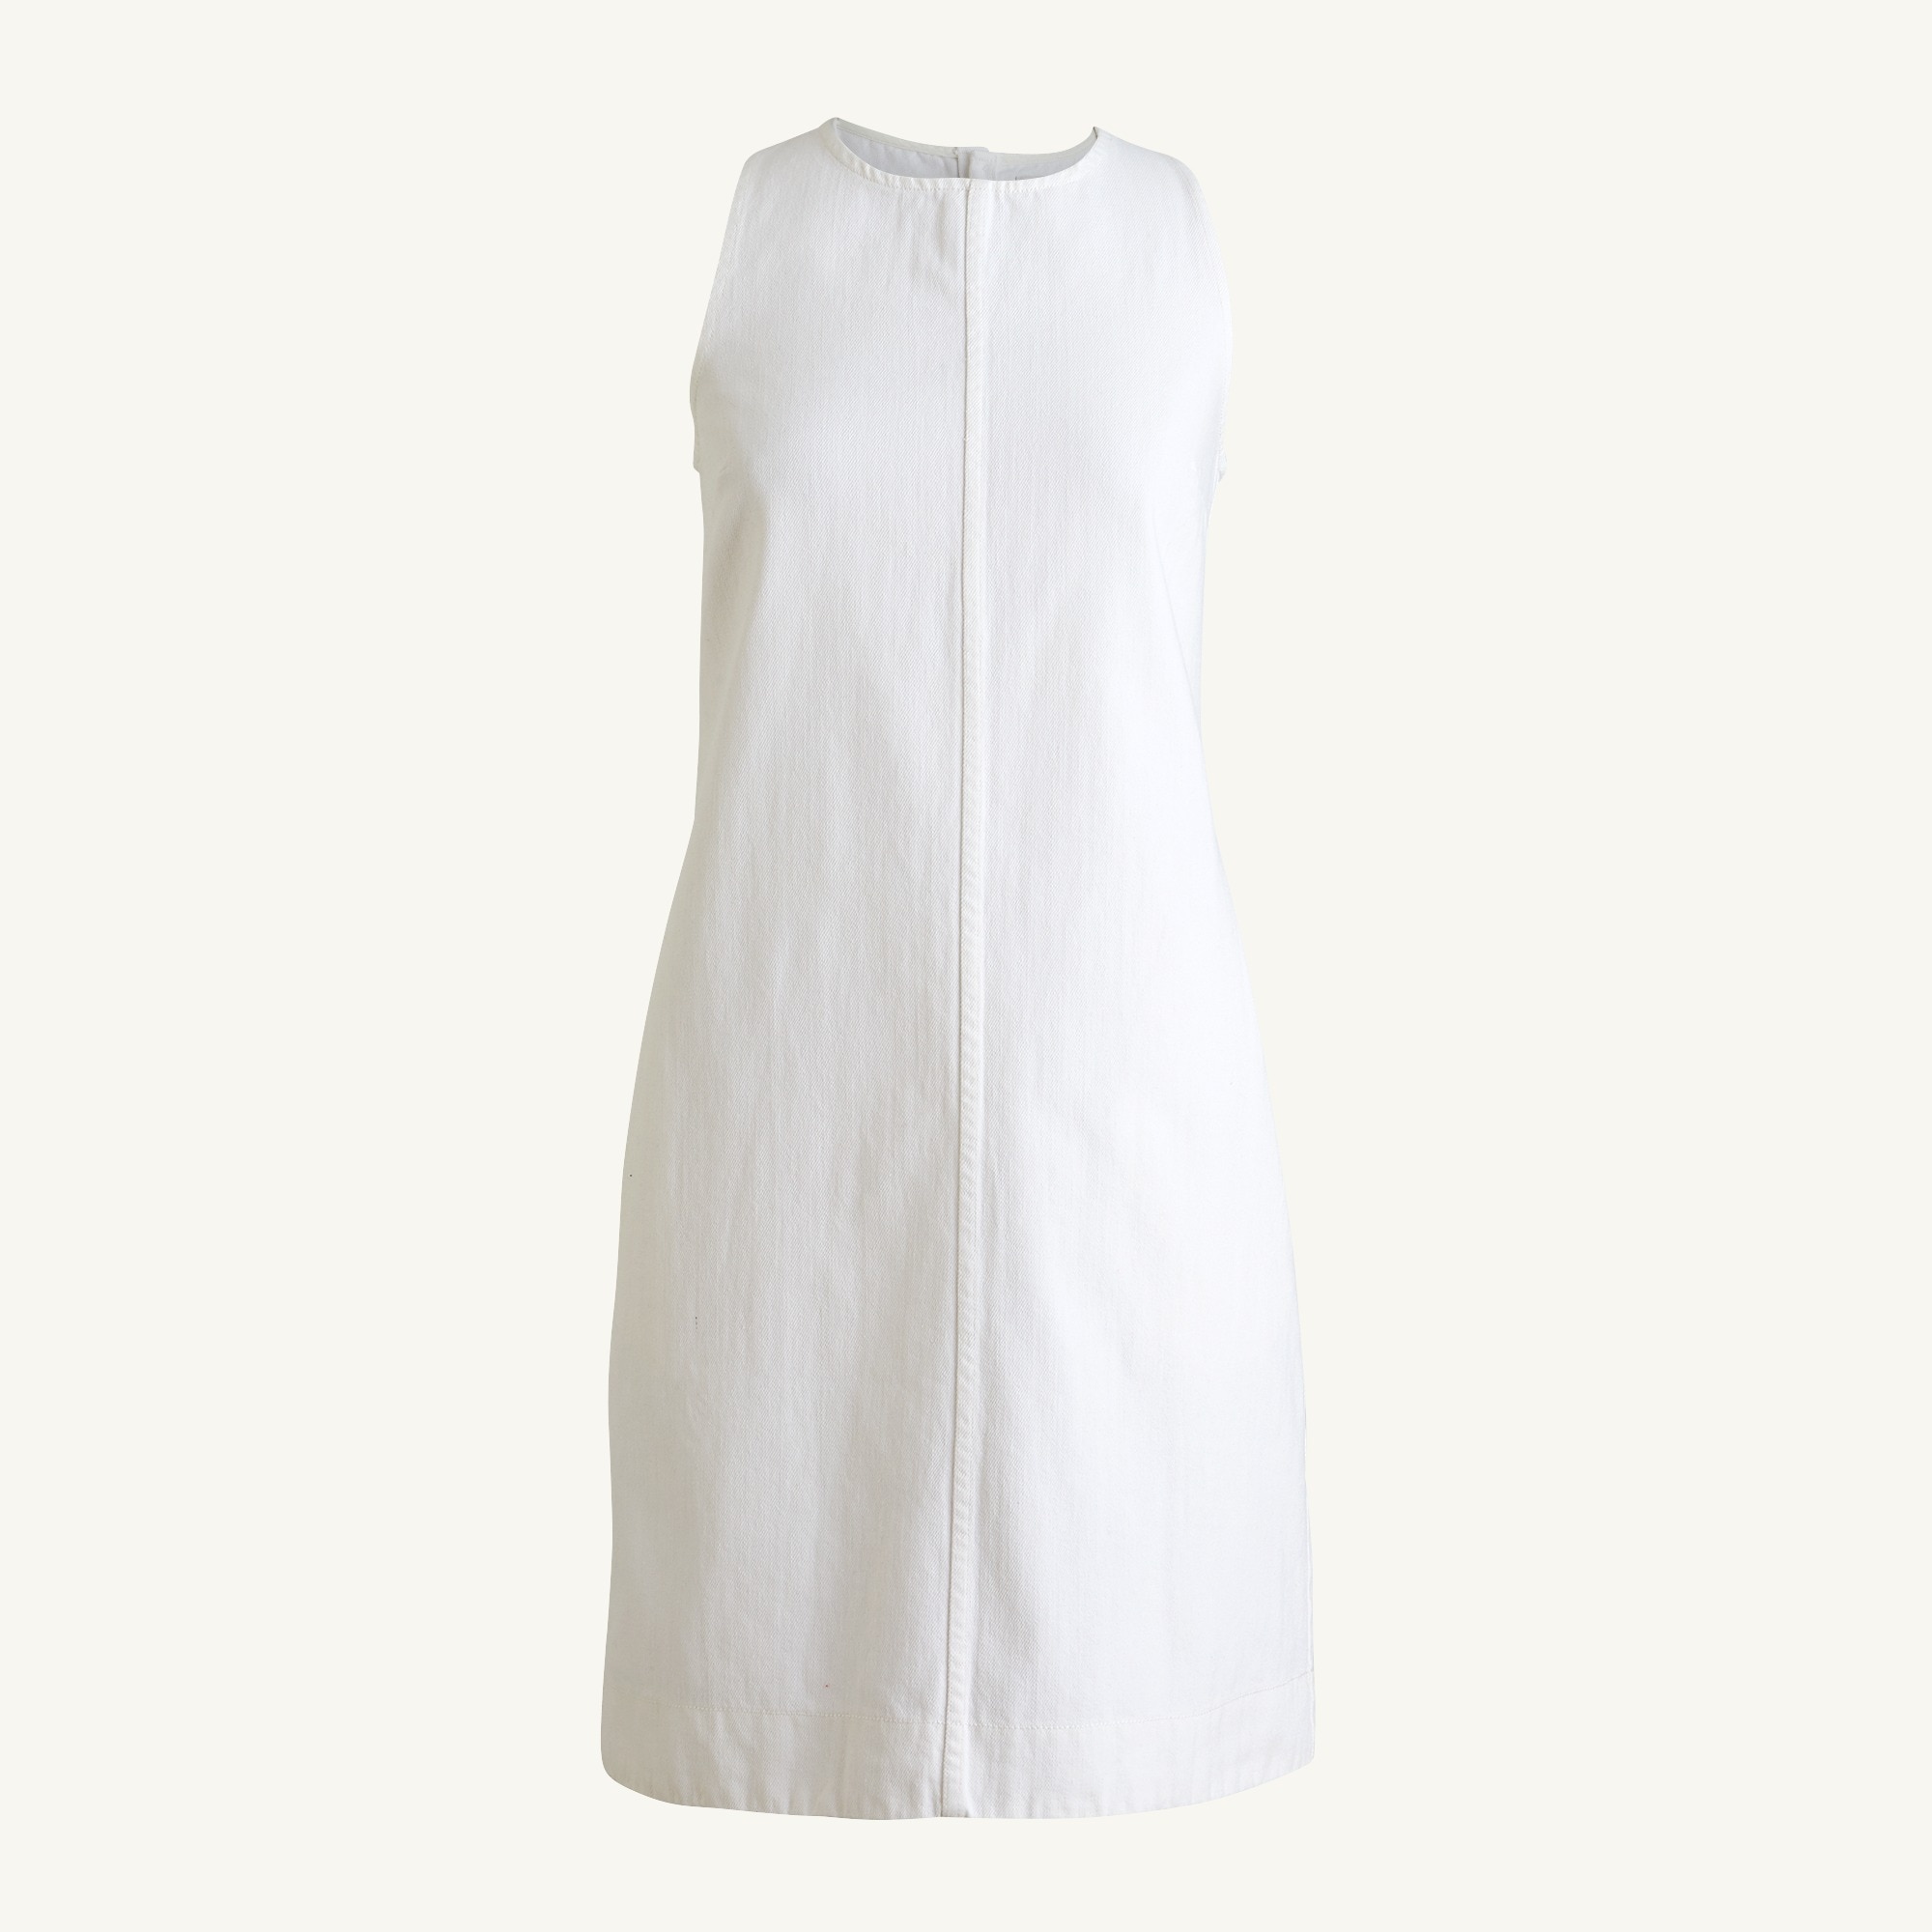 white dresses for ladies online